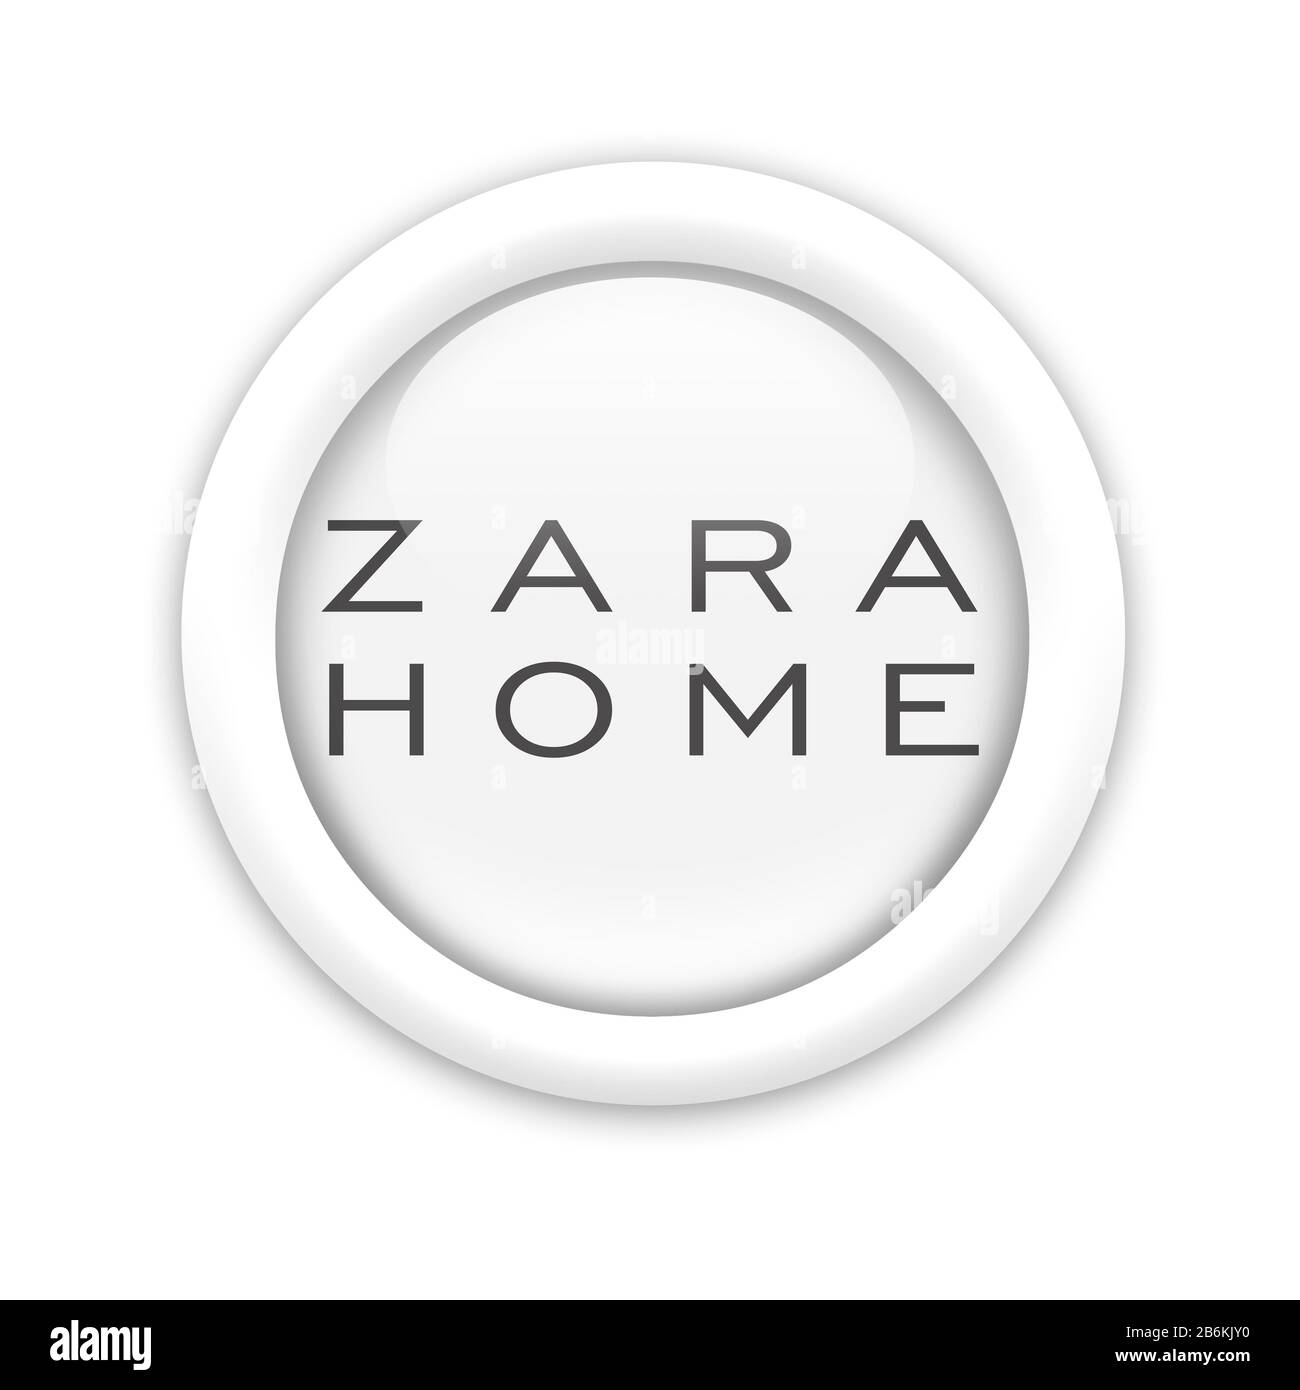 Zara Home logo Stock Photo - Alamy